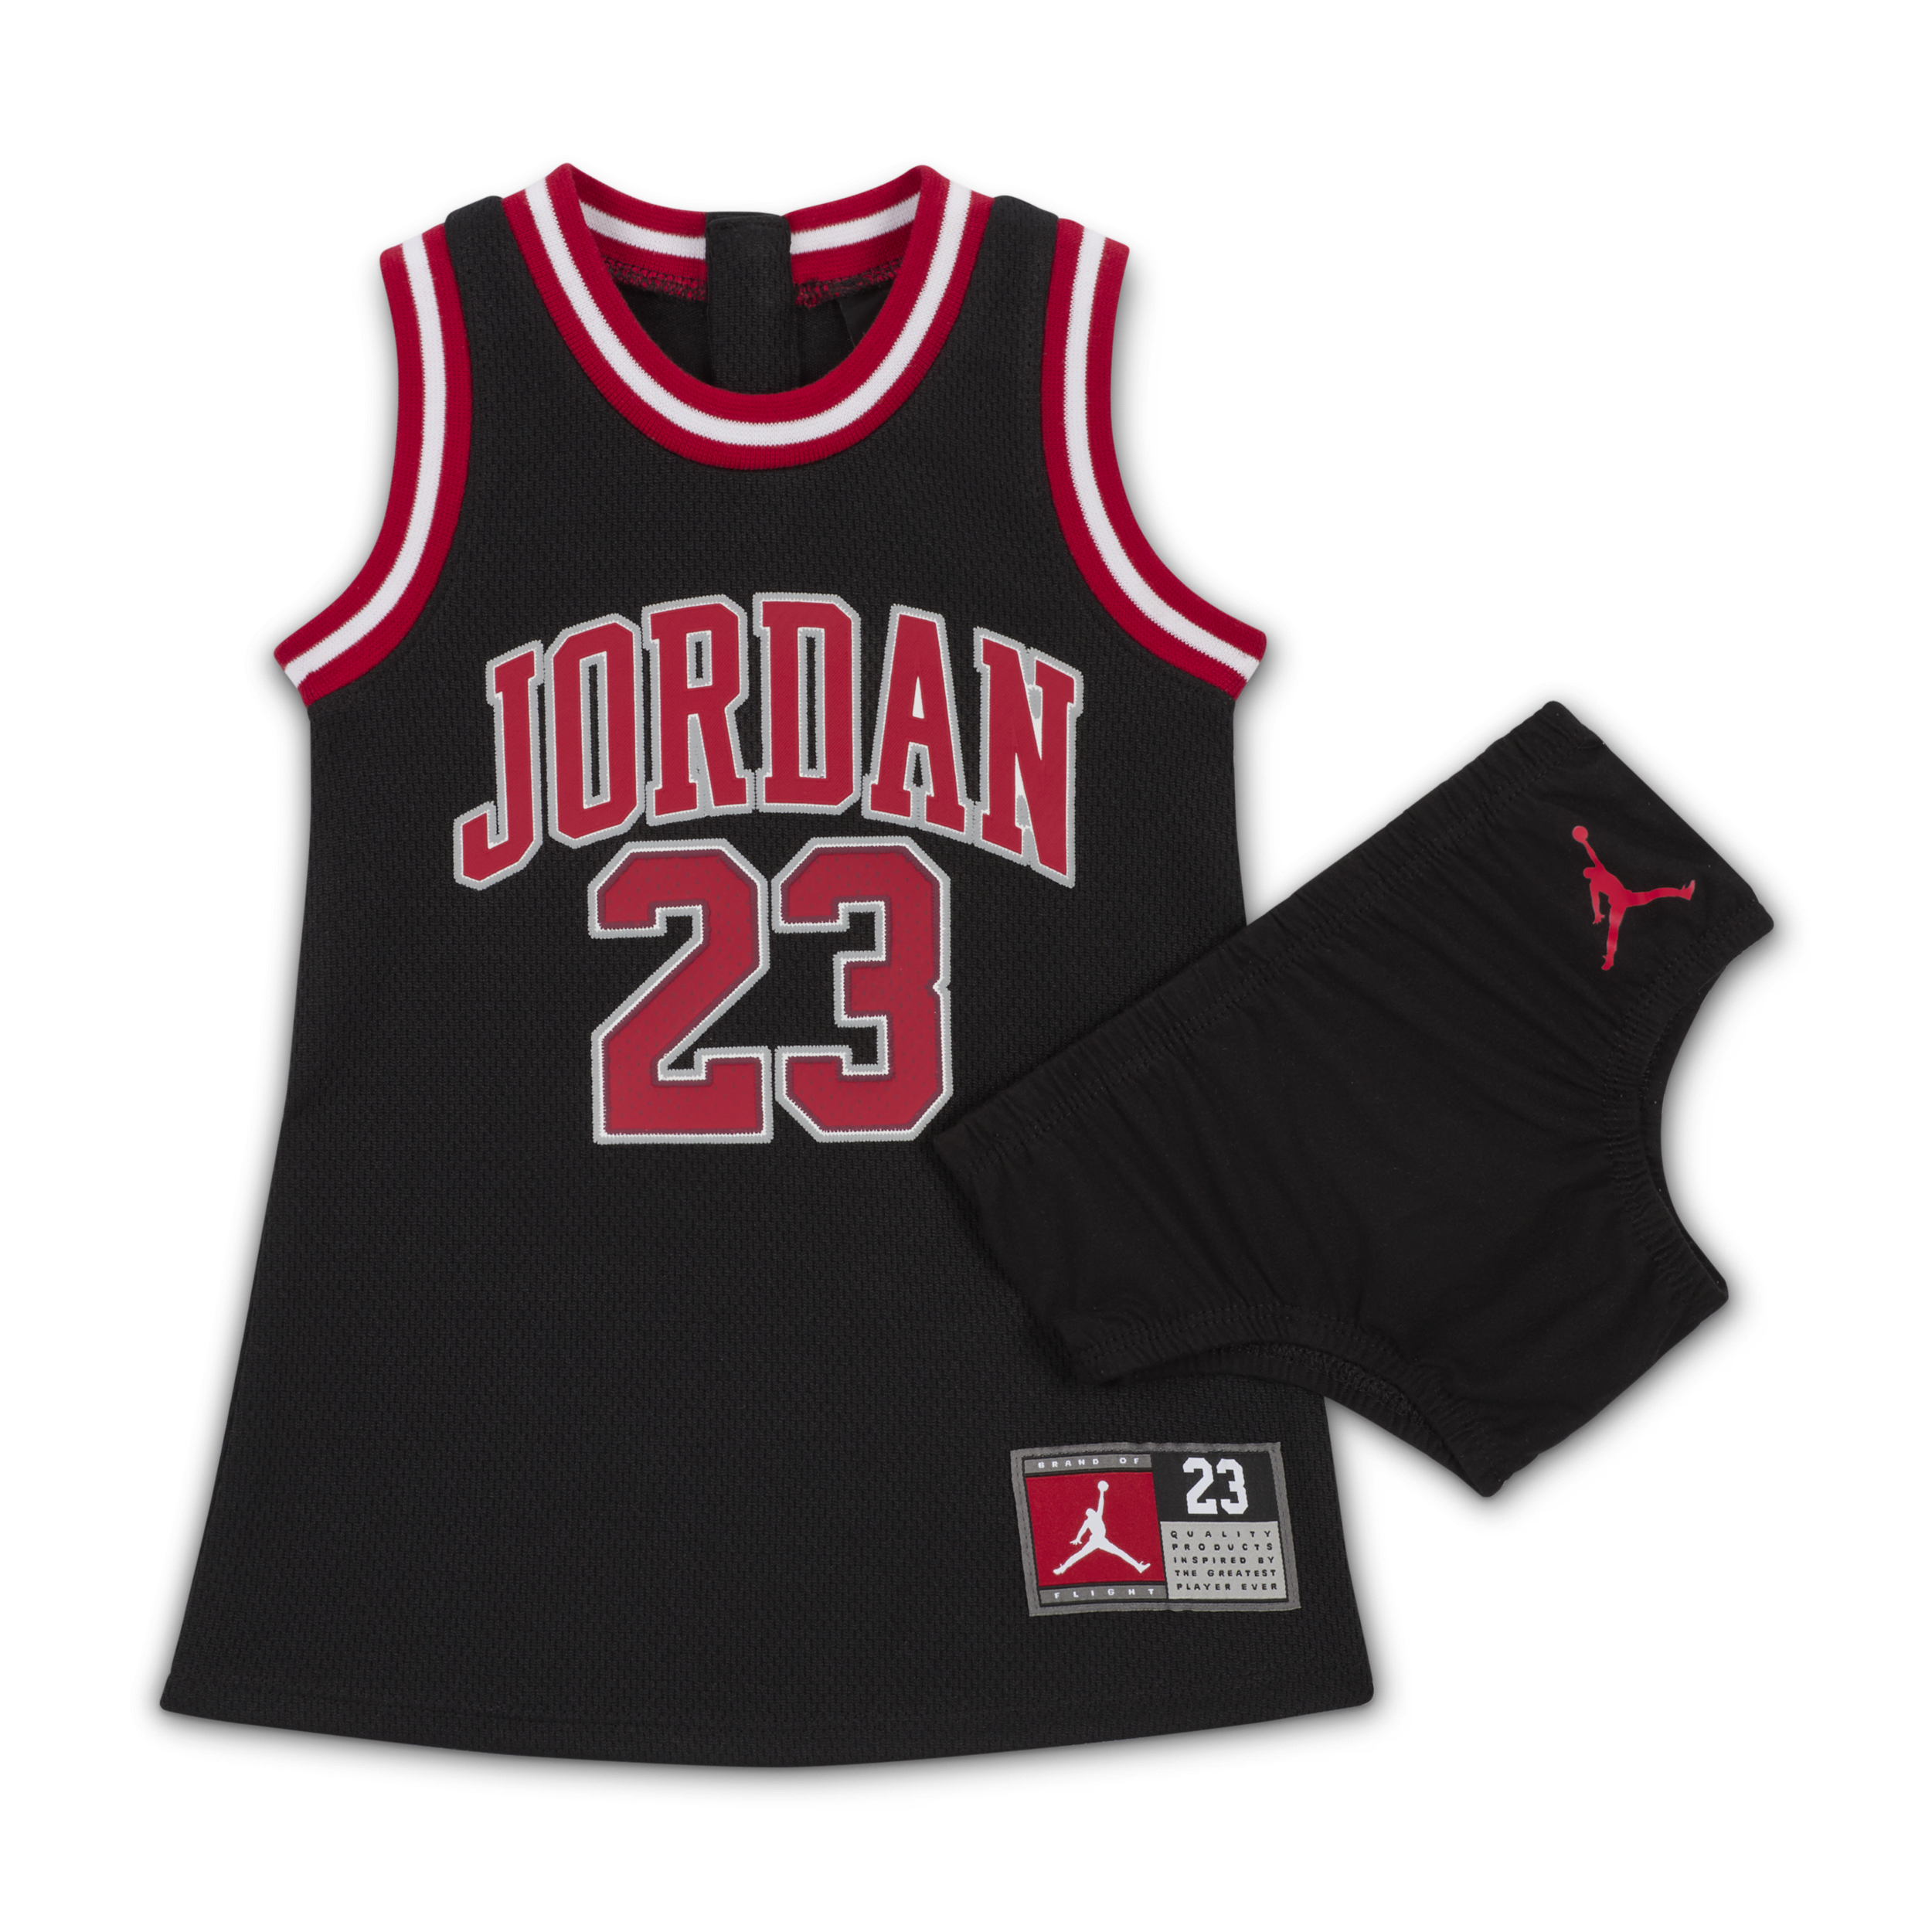 Jordan 23 Jersey jurkje voor baby's (12-24 maanden) Zwart